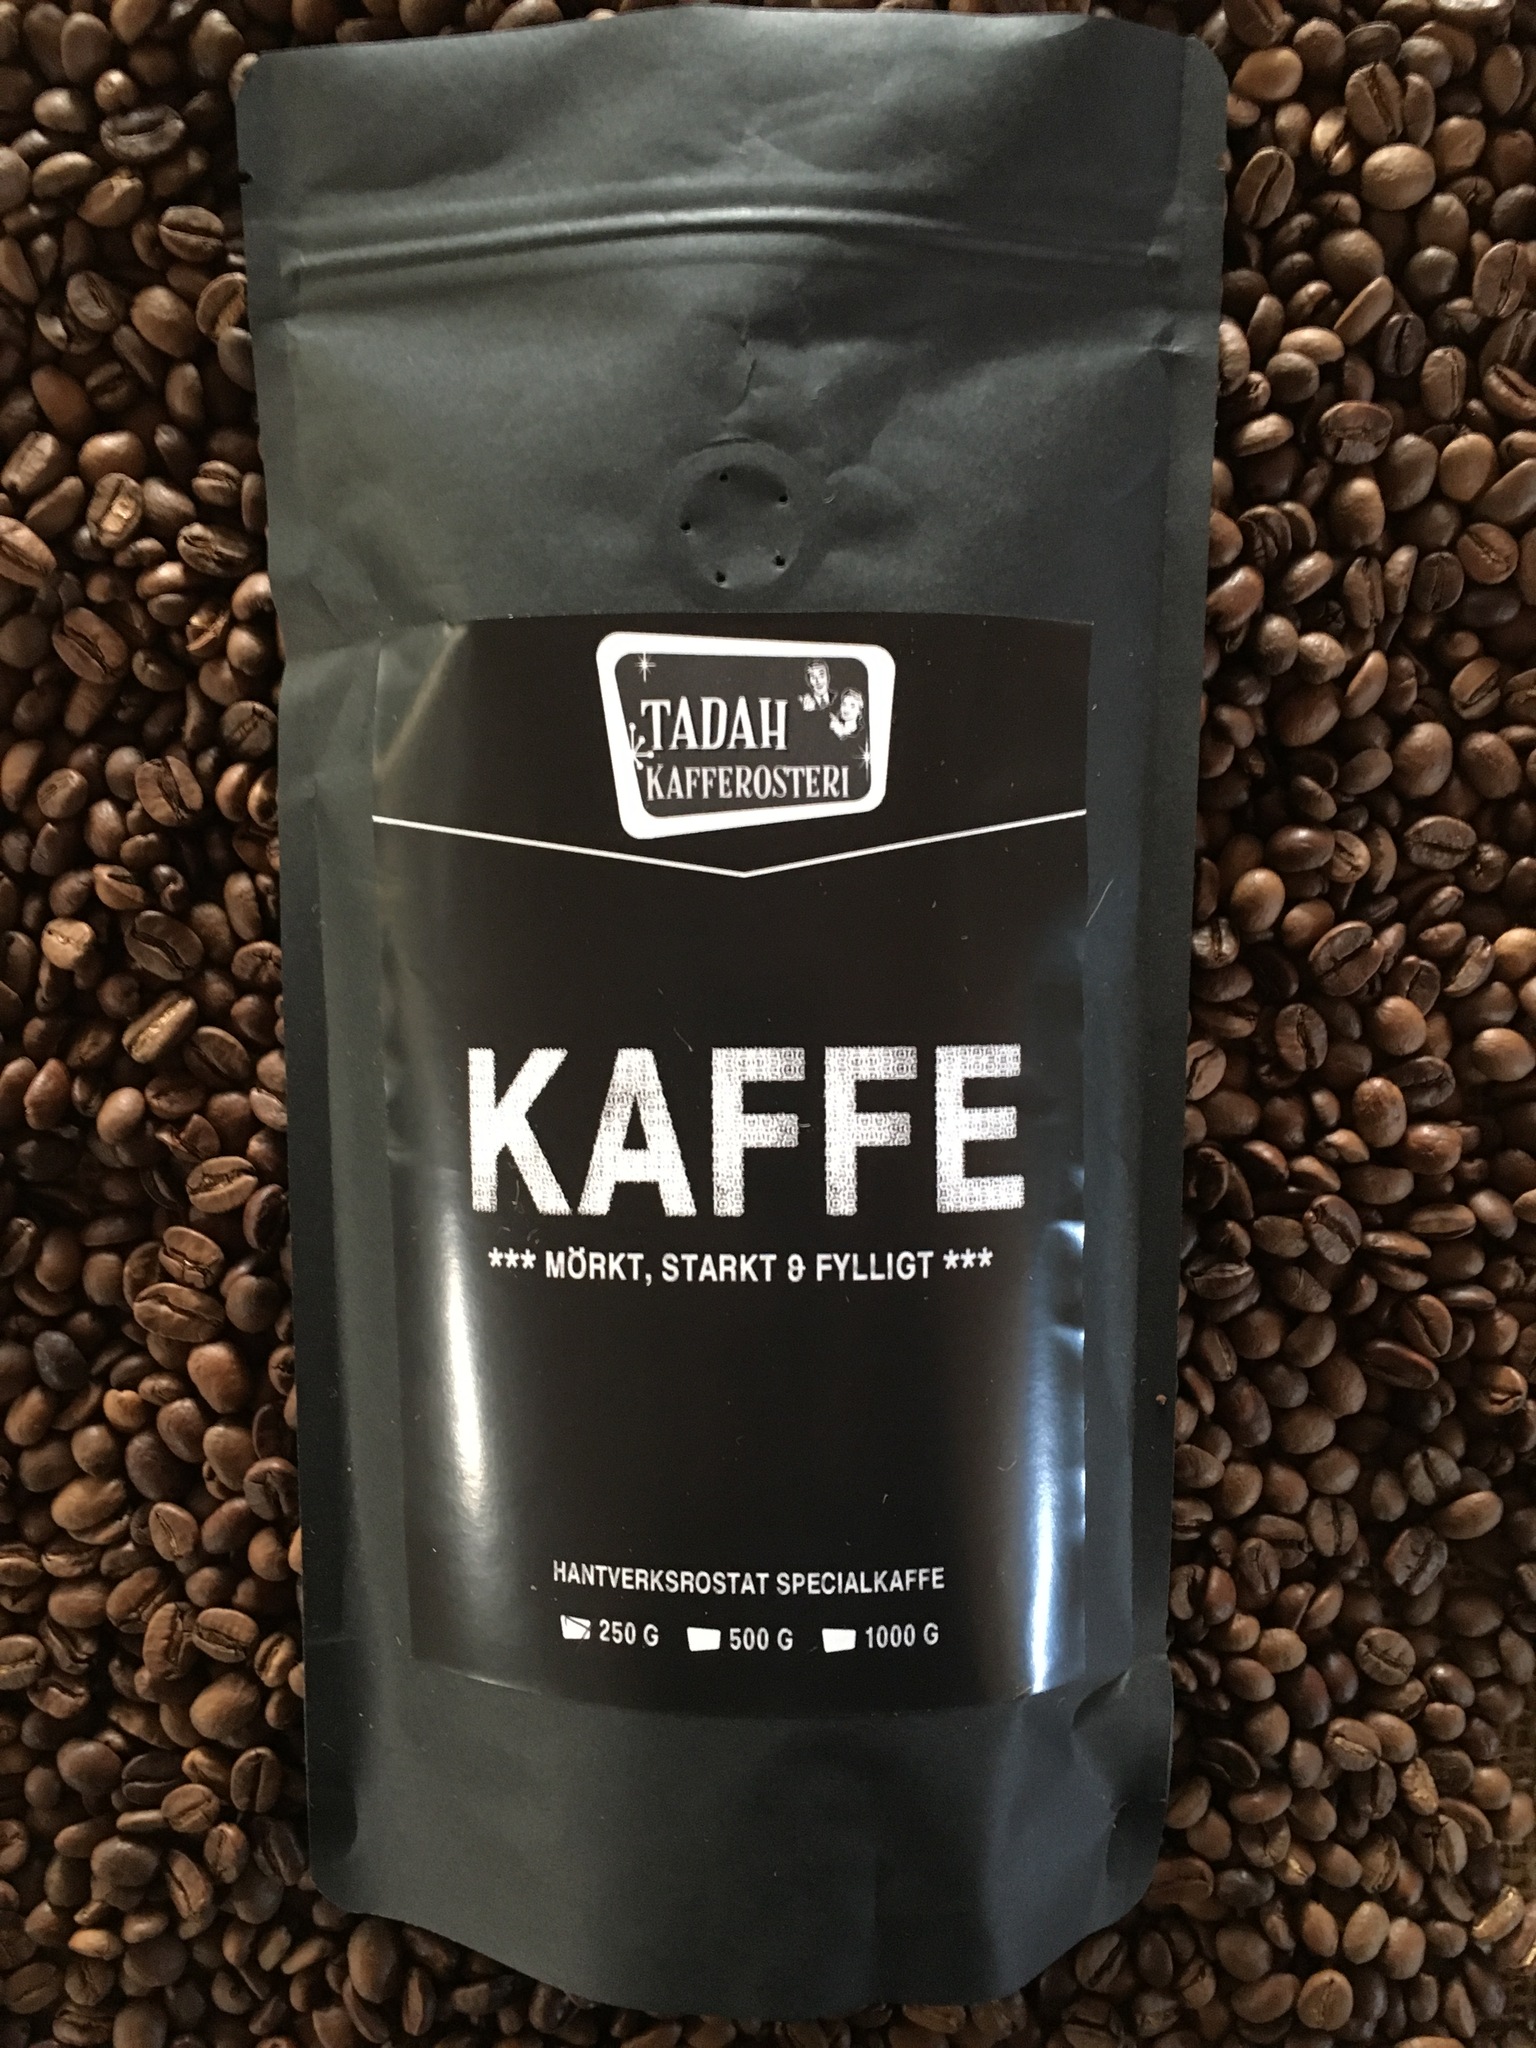 "Kaffe" | a dark roasted blend